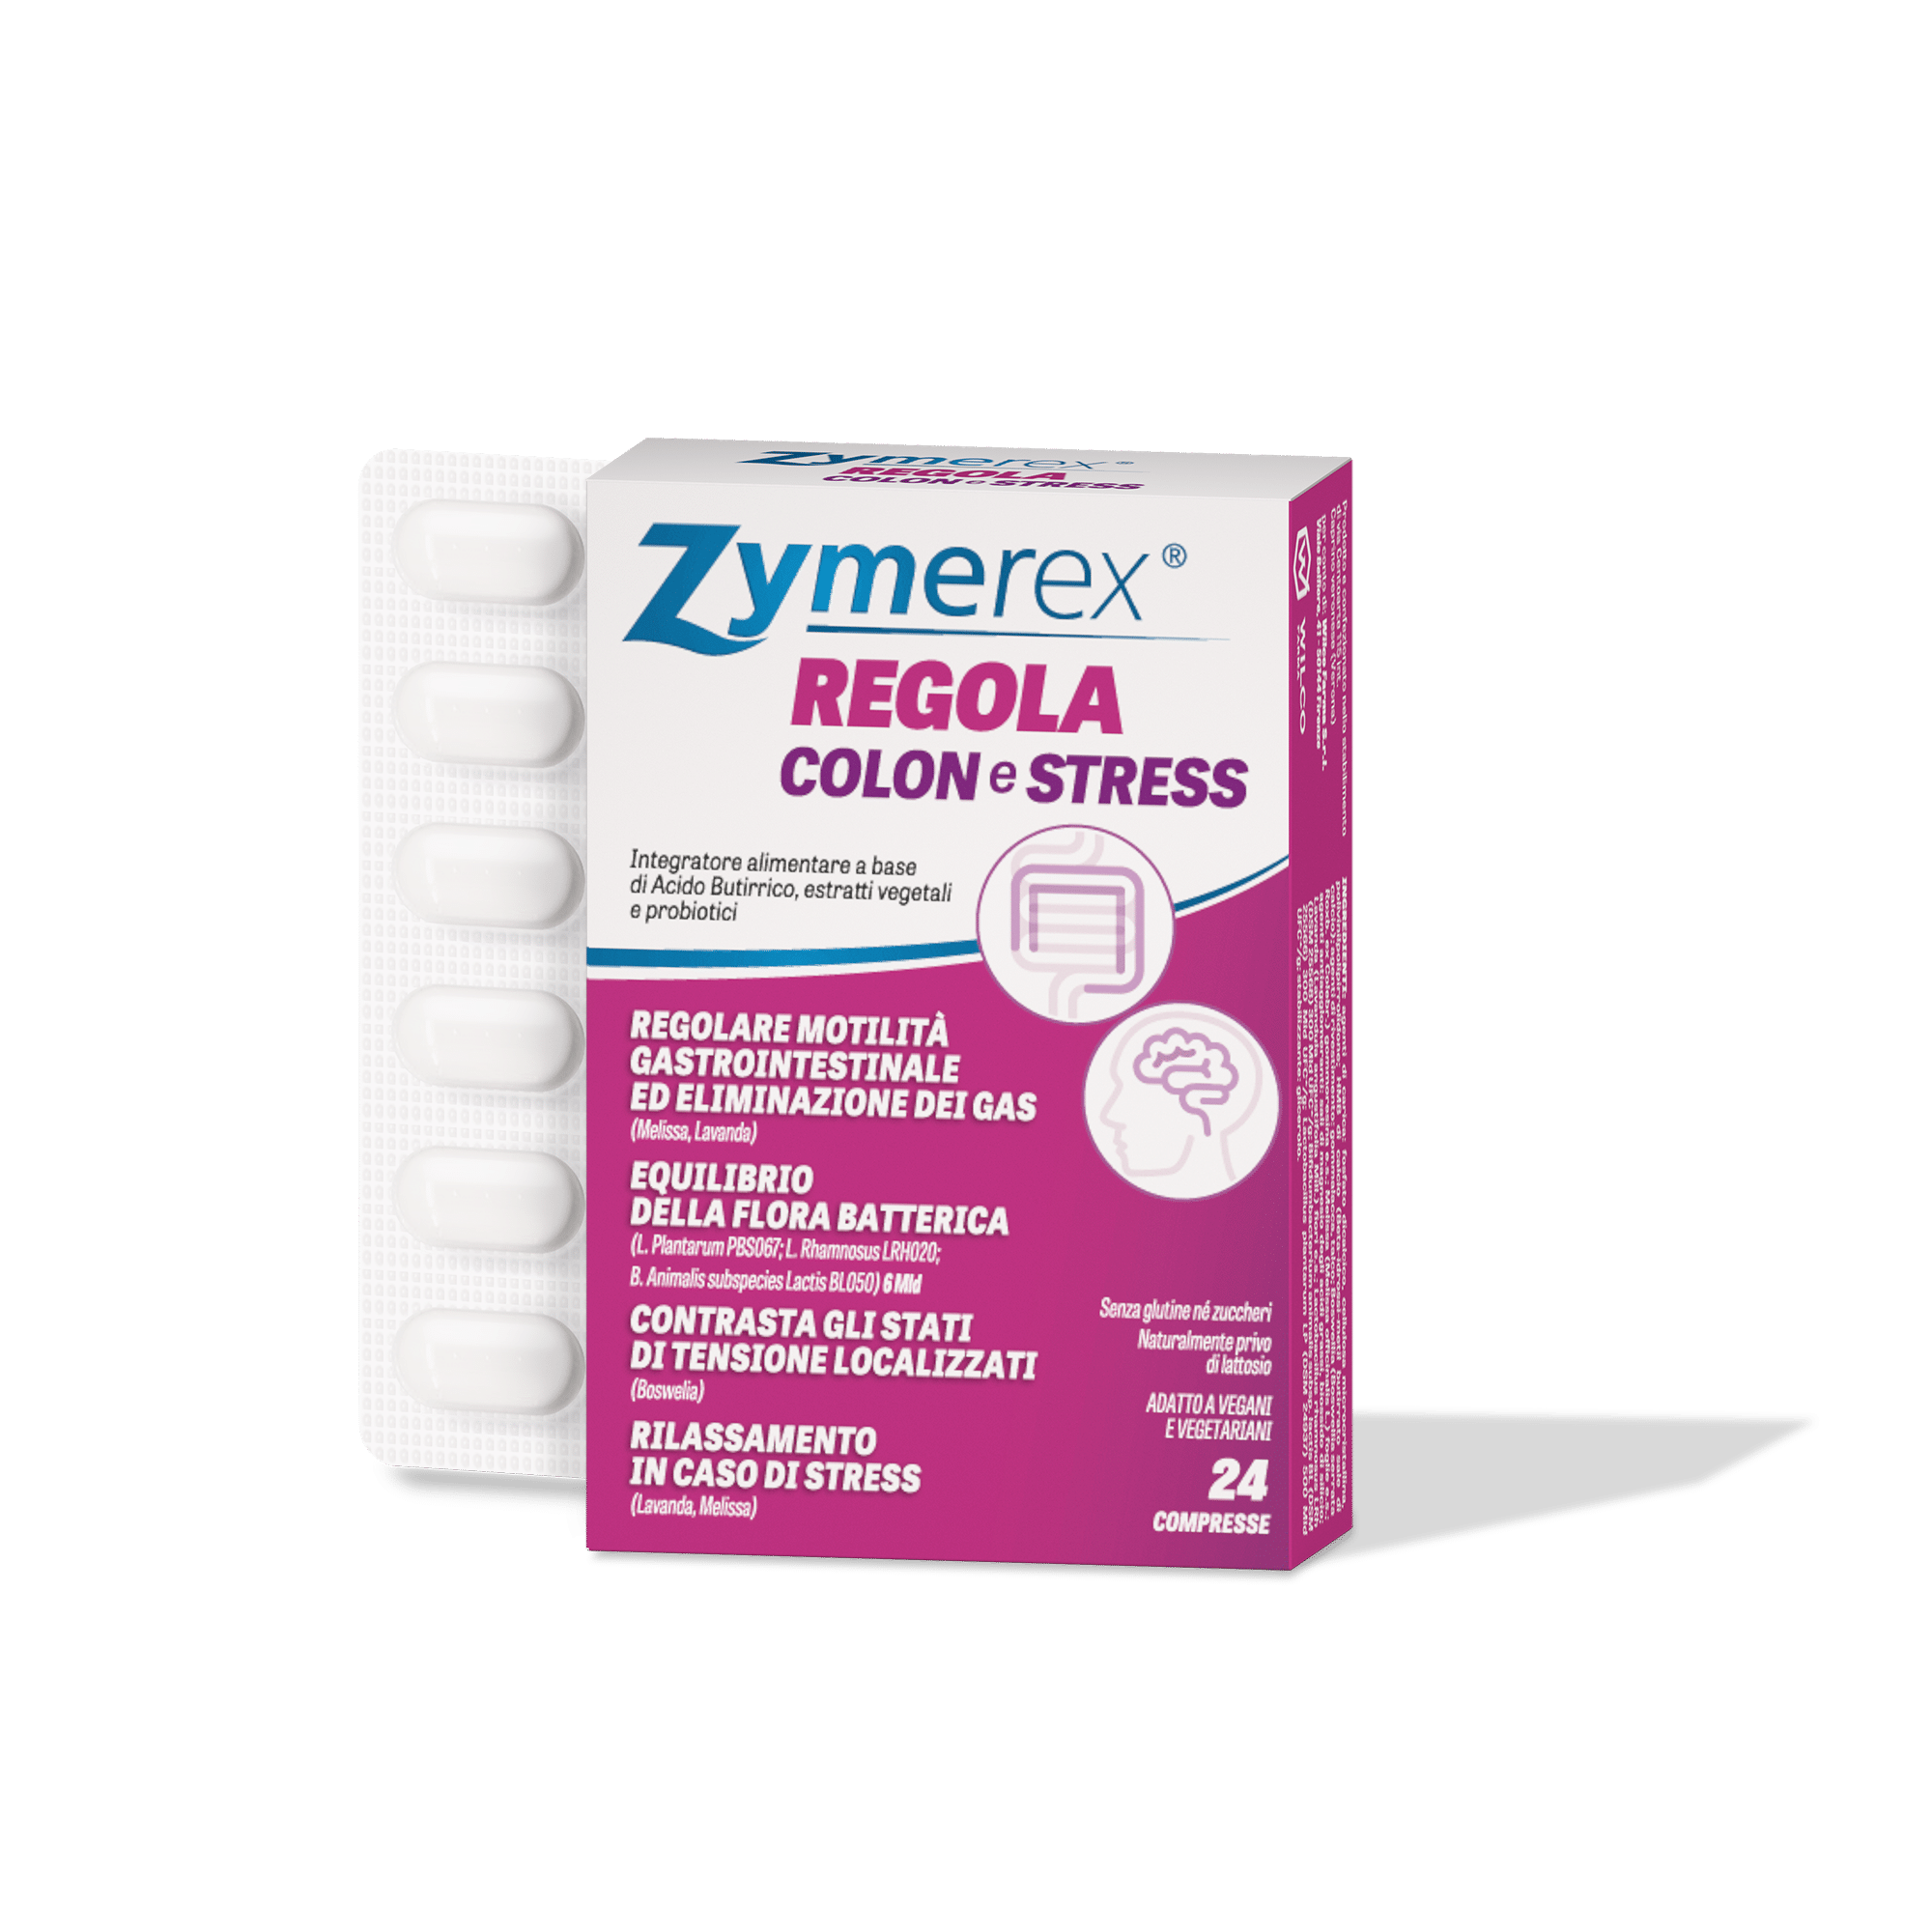 zymerex regola colon e stress confezione e contenuto